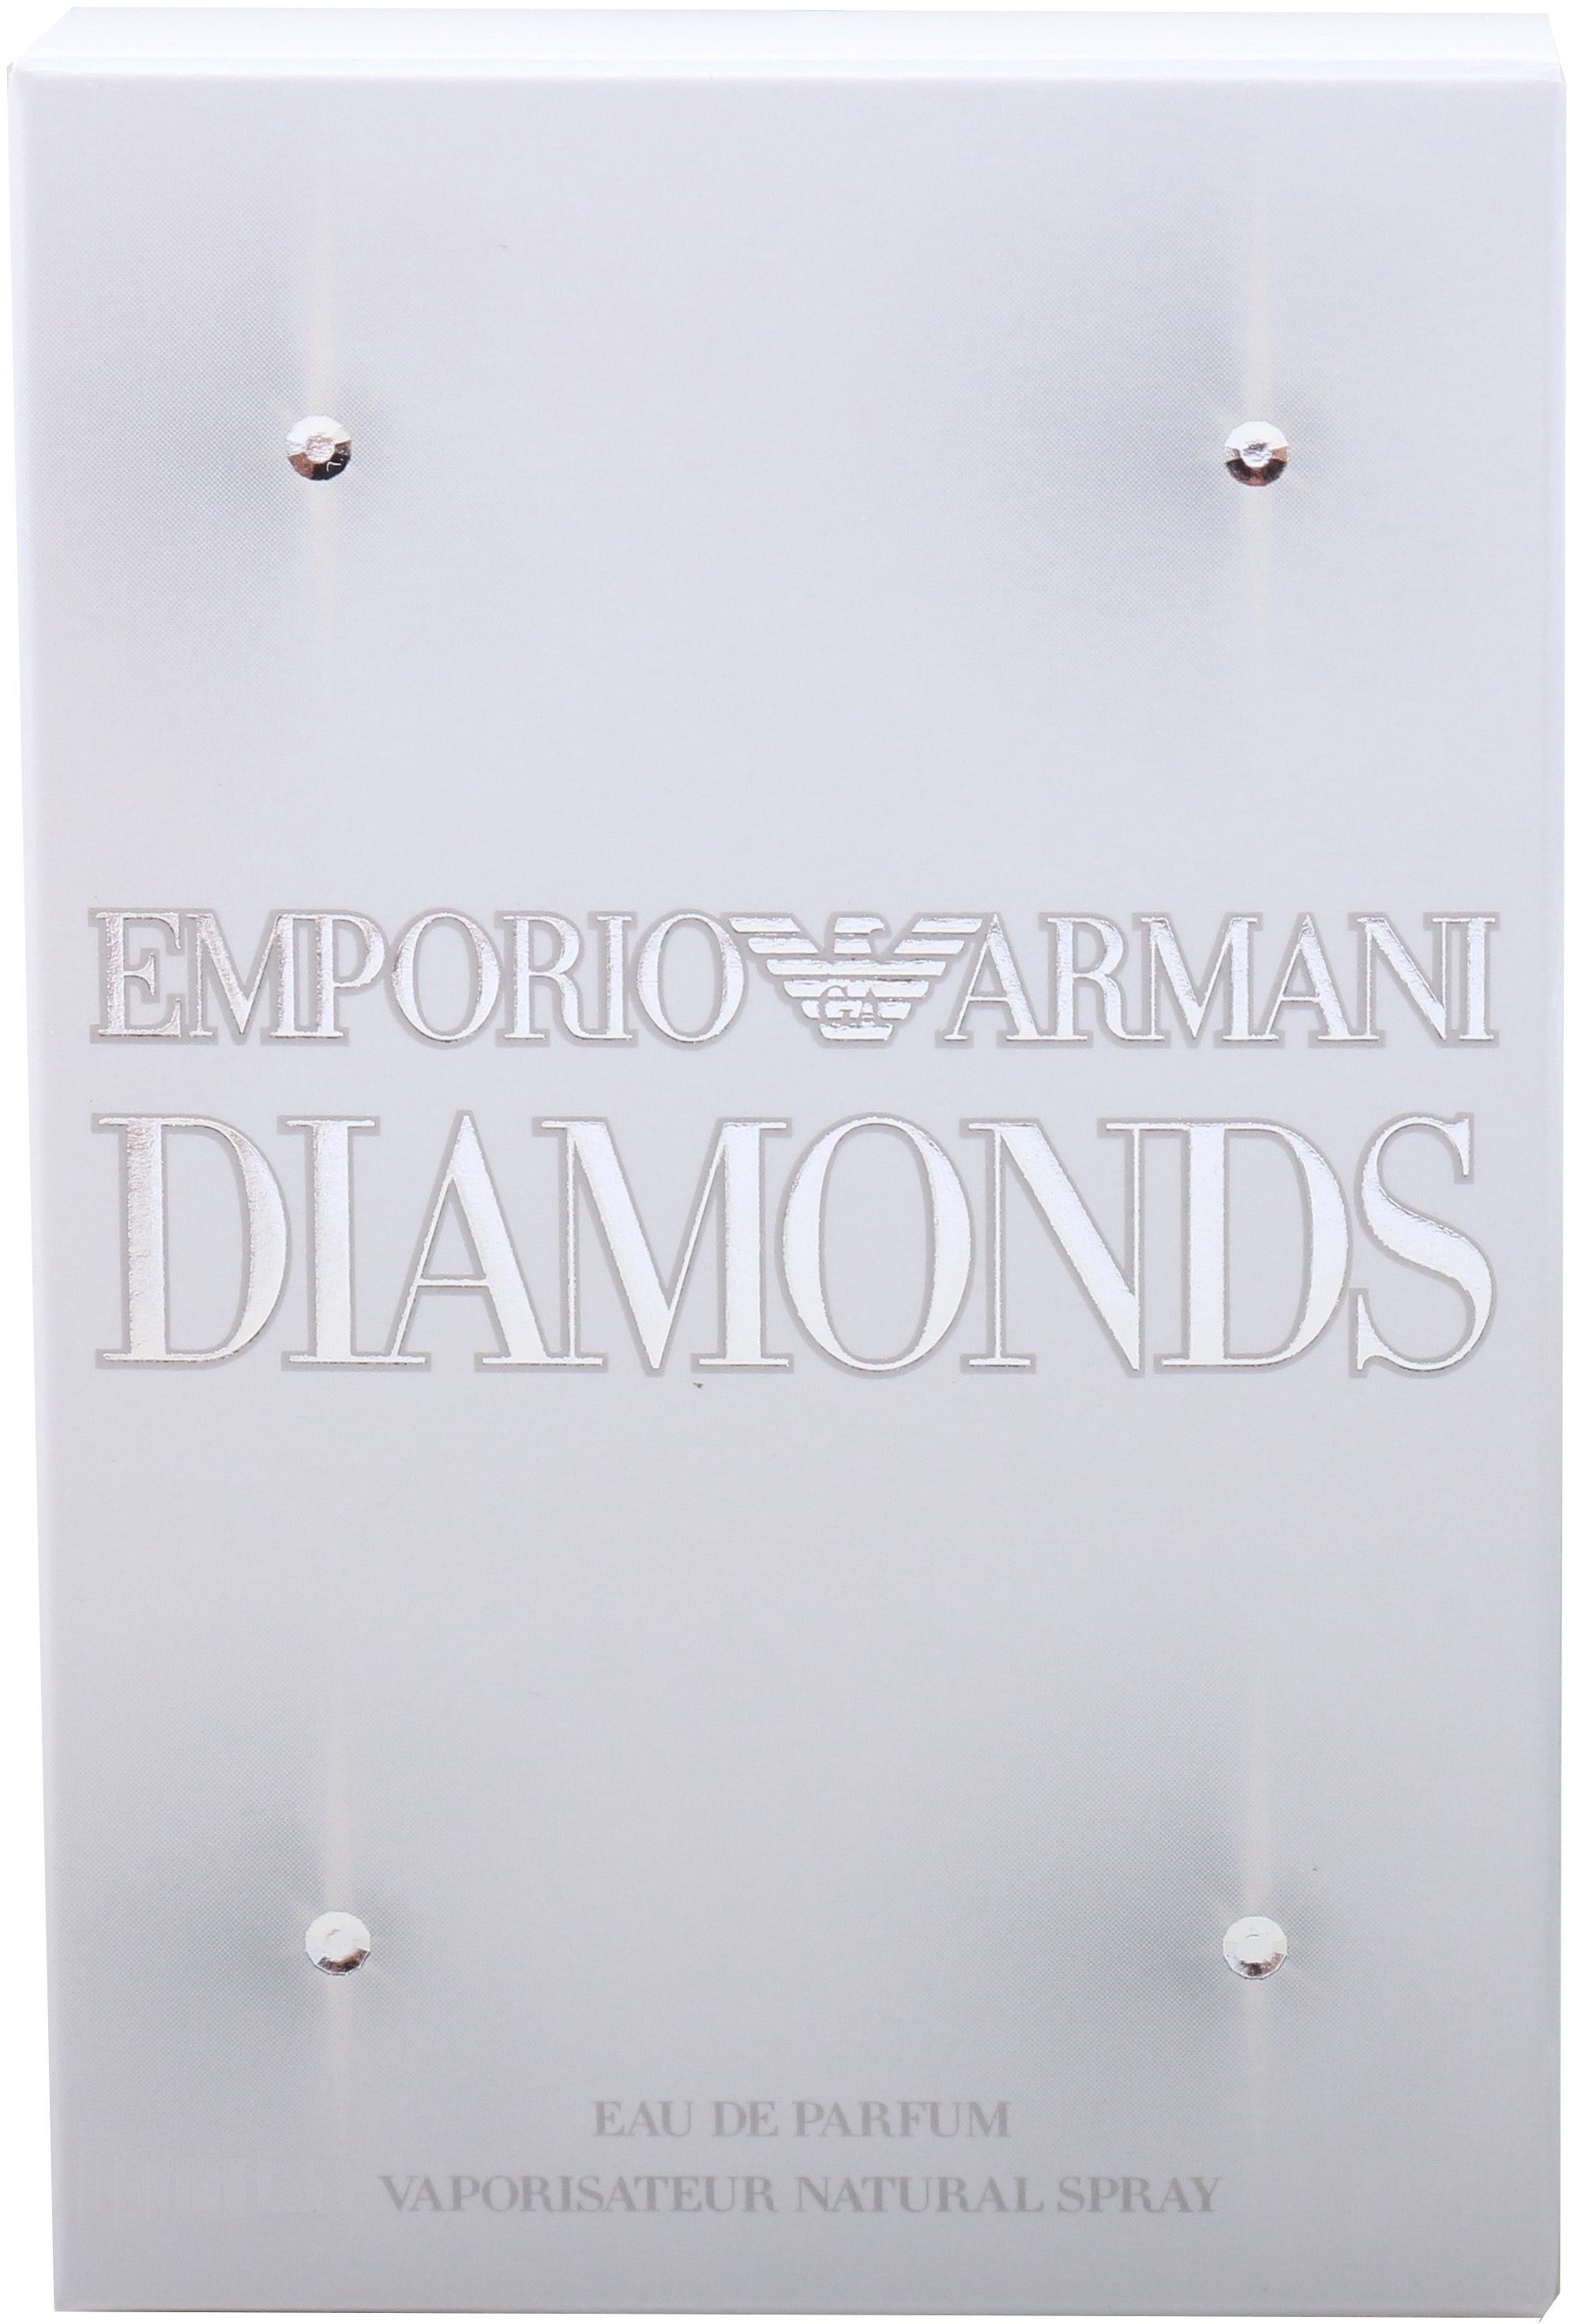 Giorgio Diamonds de Armani Parfum Eau